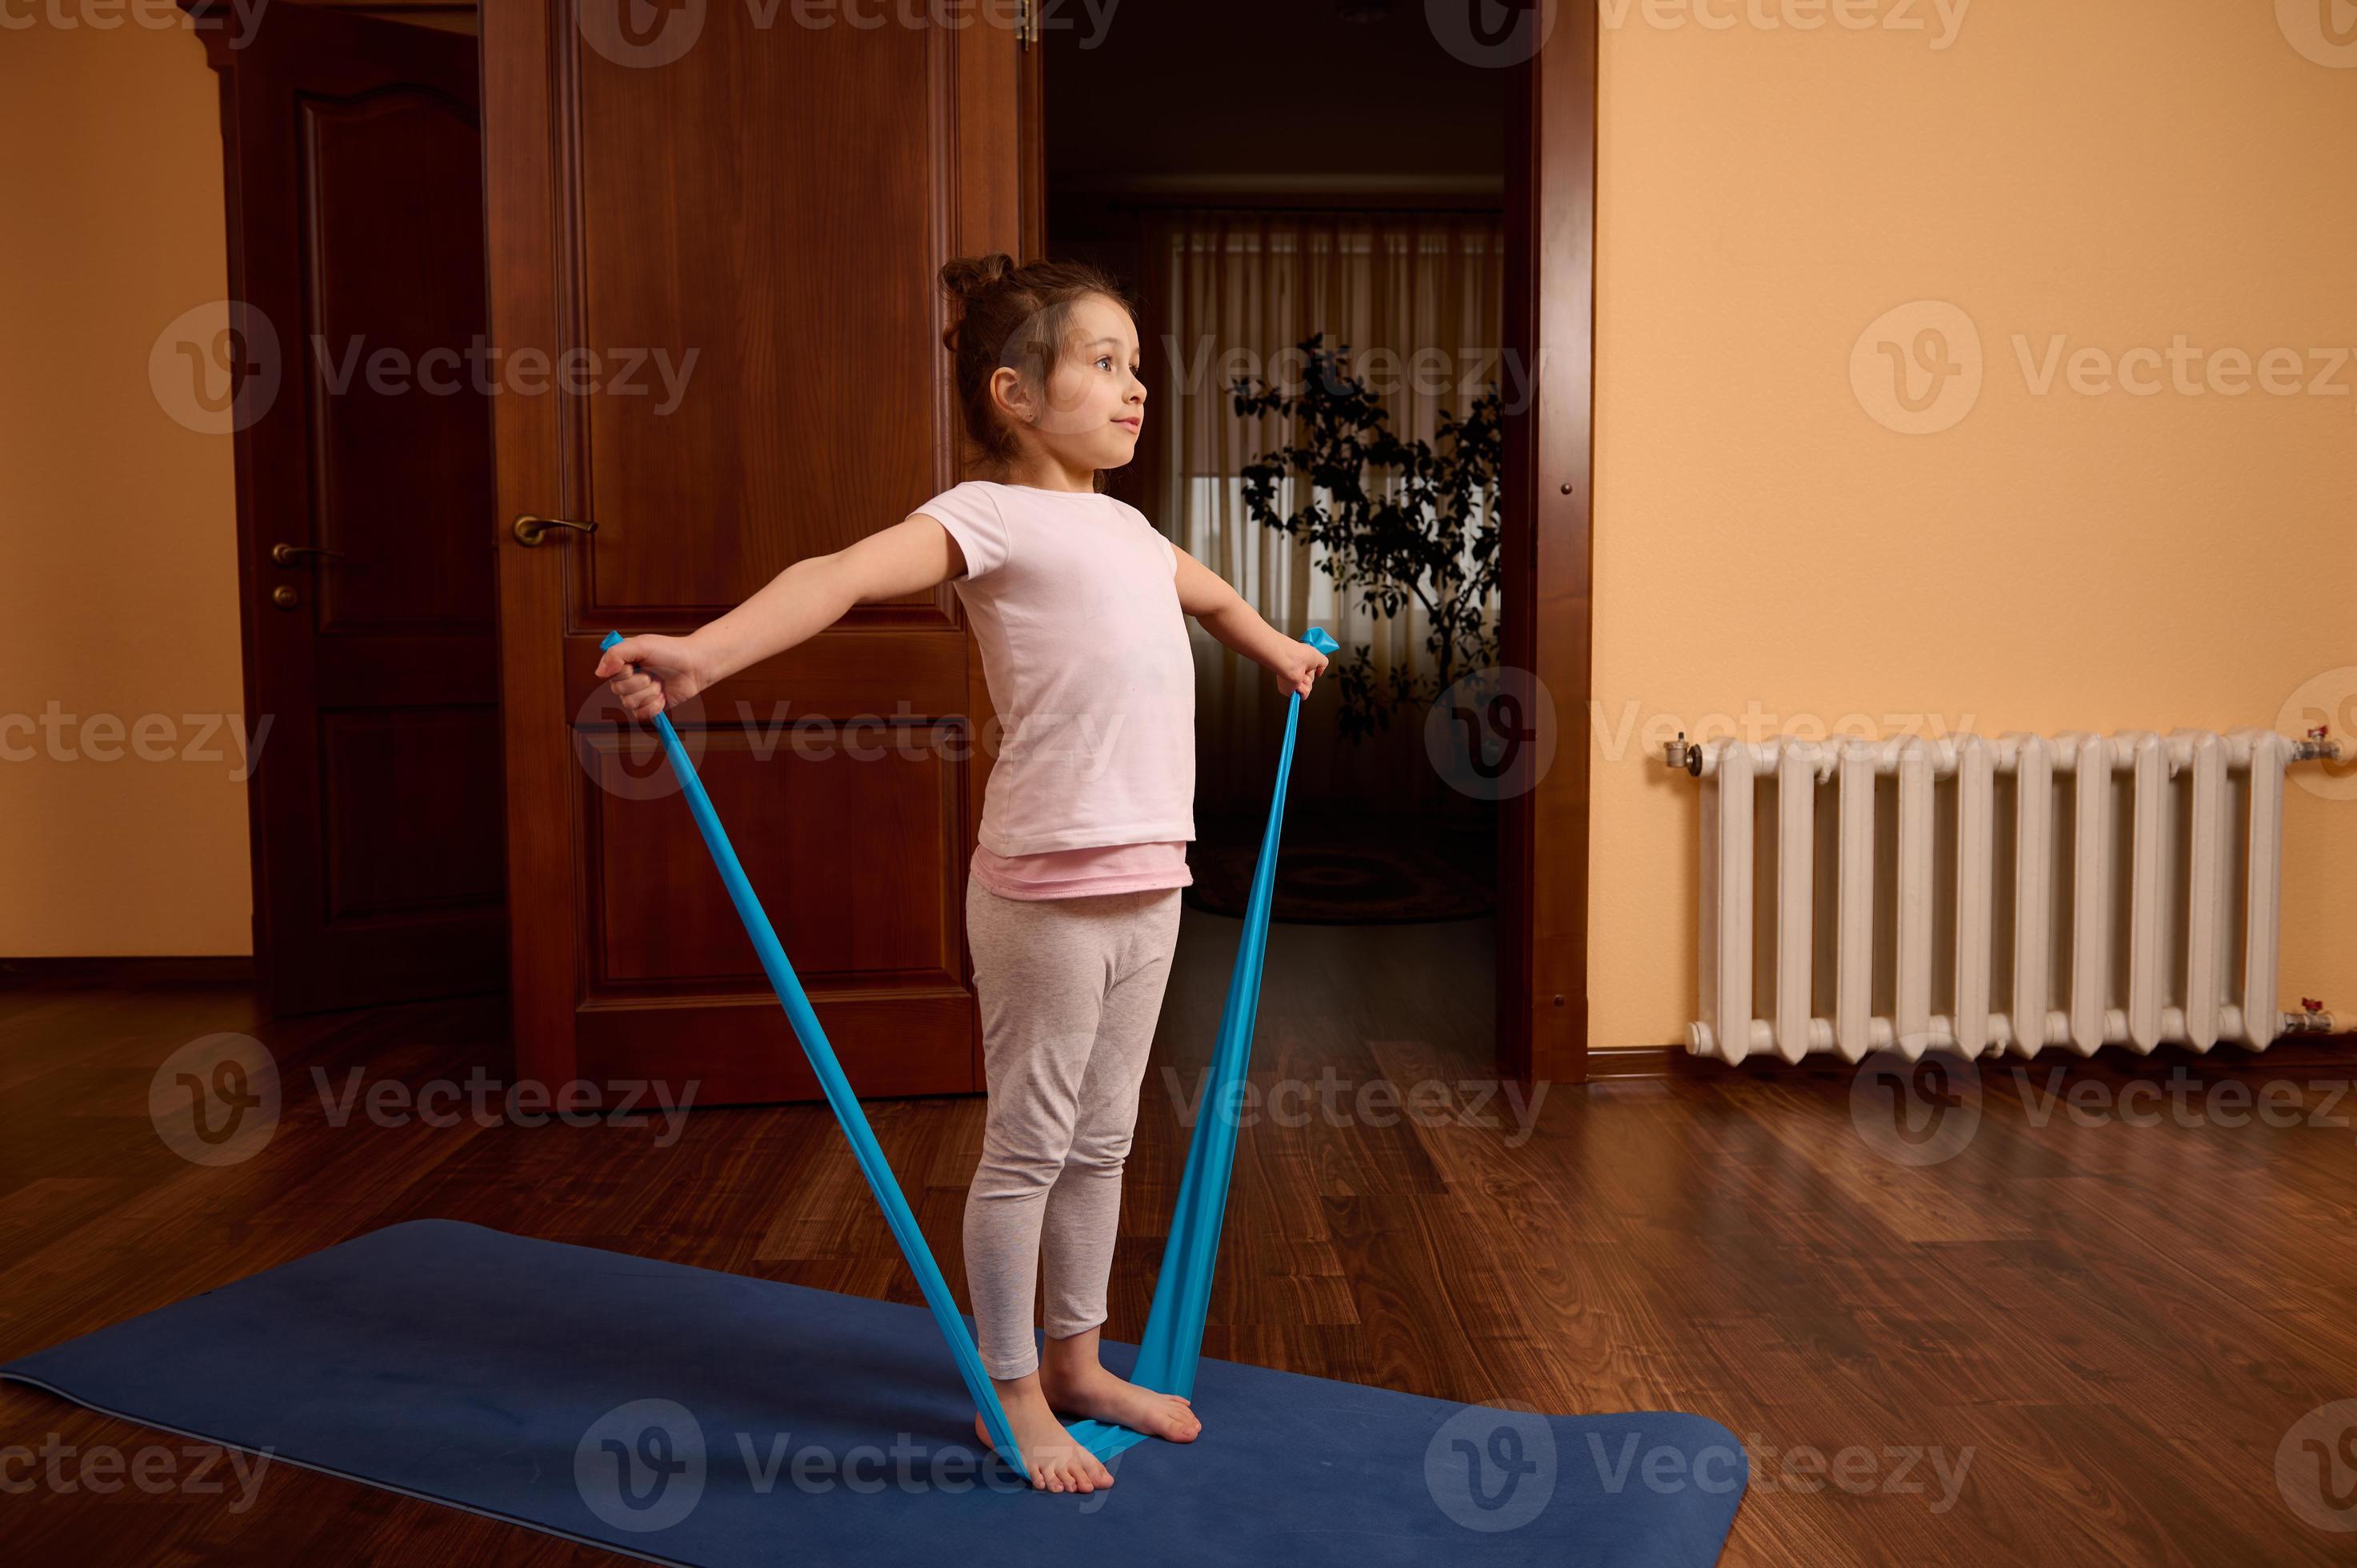 https://static.vecteezy.com/ti/photos-gratuite/p2/22971473-peu-enfant-fille-dans-tenue-de-sport-permanent-sur-une-gym-tapis-et-faire-elongation-des-exercices-sur-bras-avec-elastique-bande-a-accueil-photo.jpg